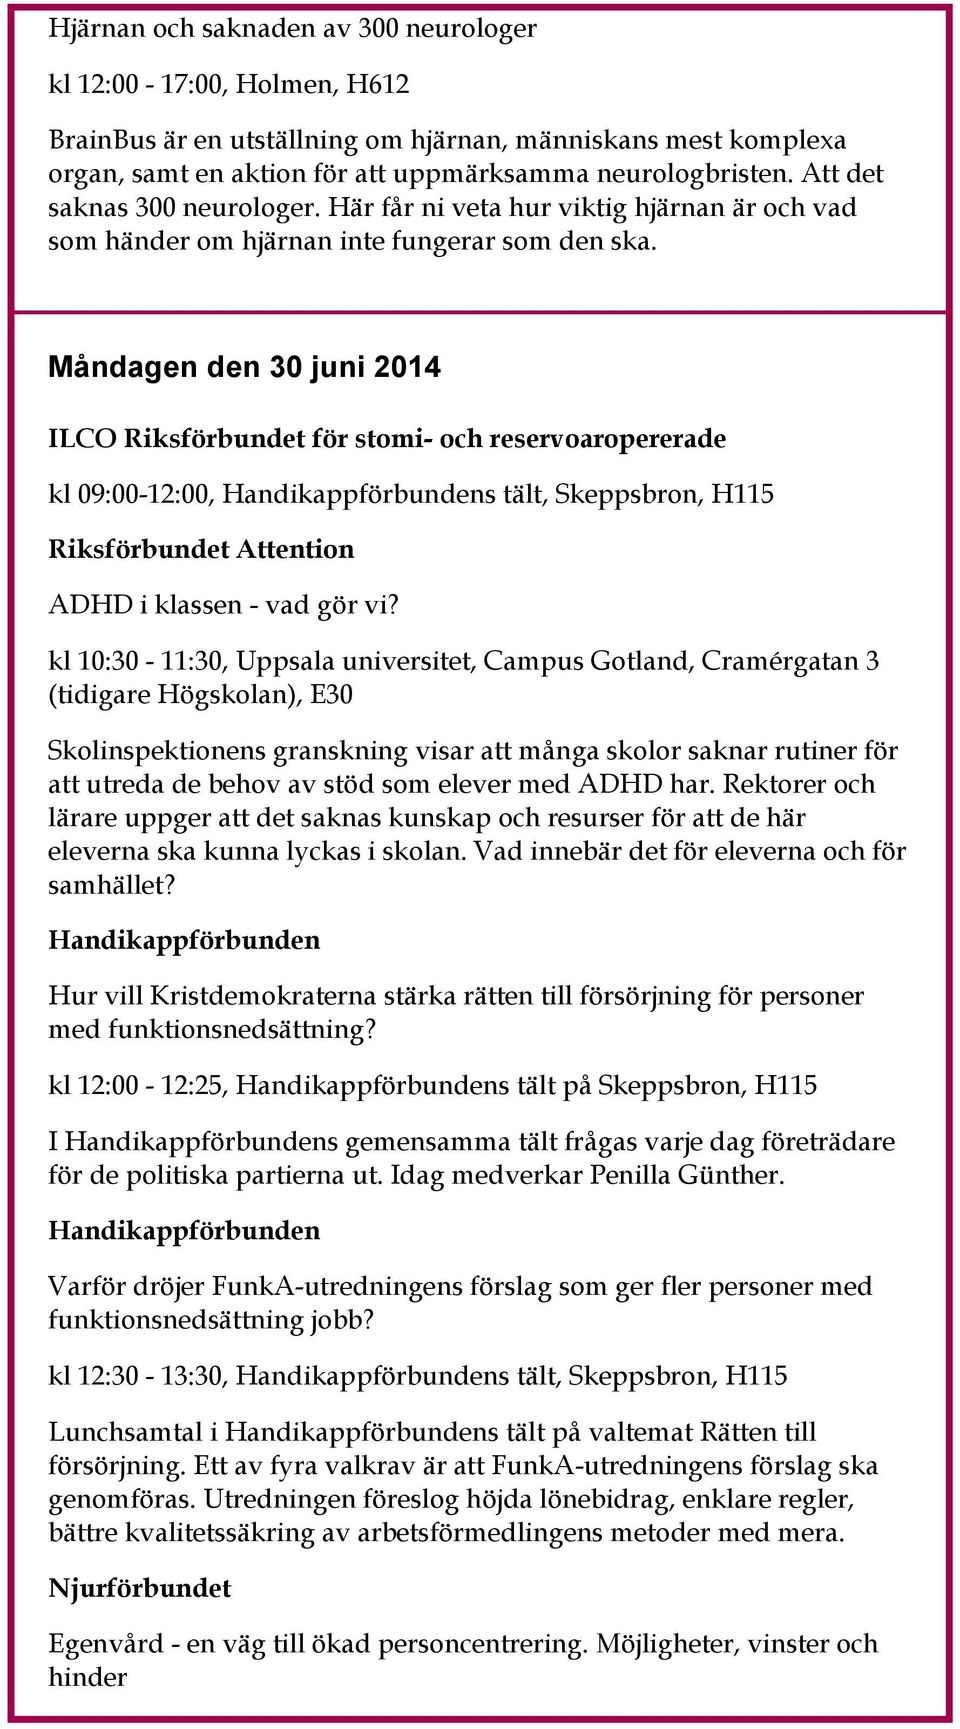 Måndagen den 30 juni 2014 ILCO Riksförbundet för stomi- och reservoaropererade kl 09:00-12:00, s tält, Skeppsbron, H115 Riksförbundet Attention ADHD i klassen - vad gör vi?